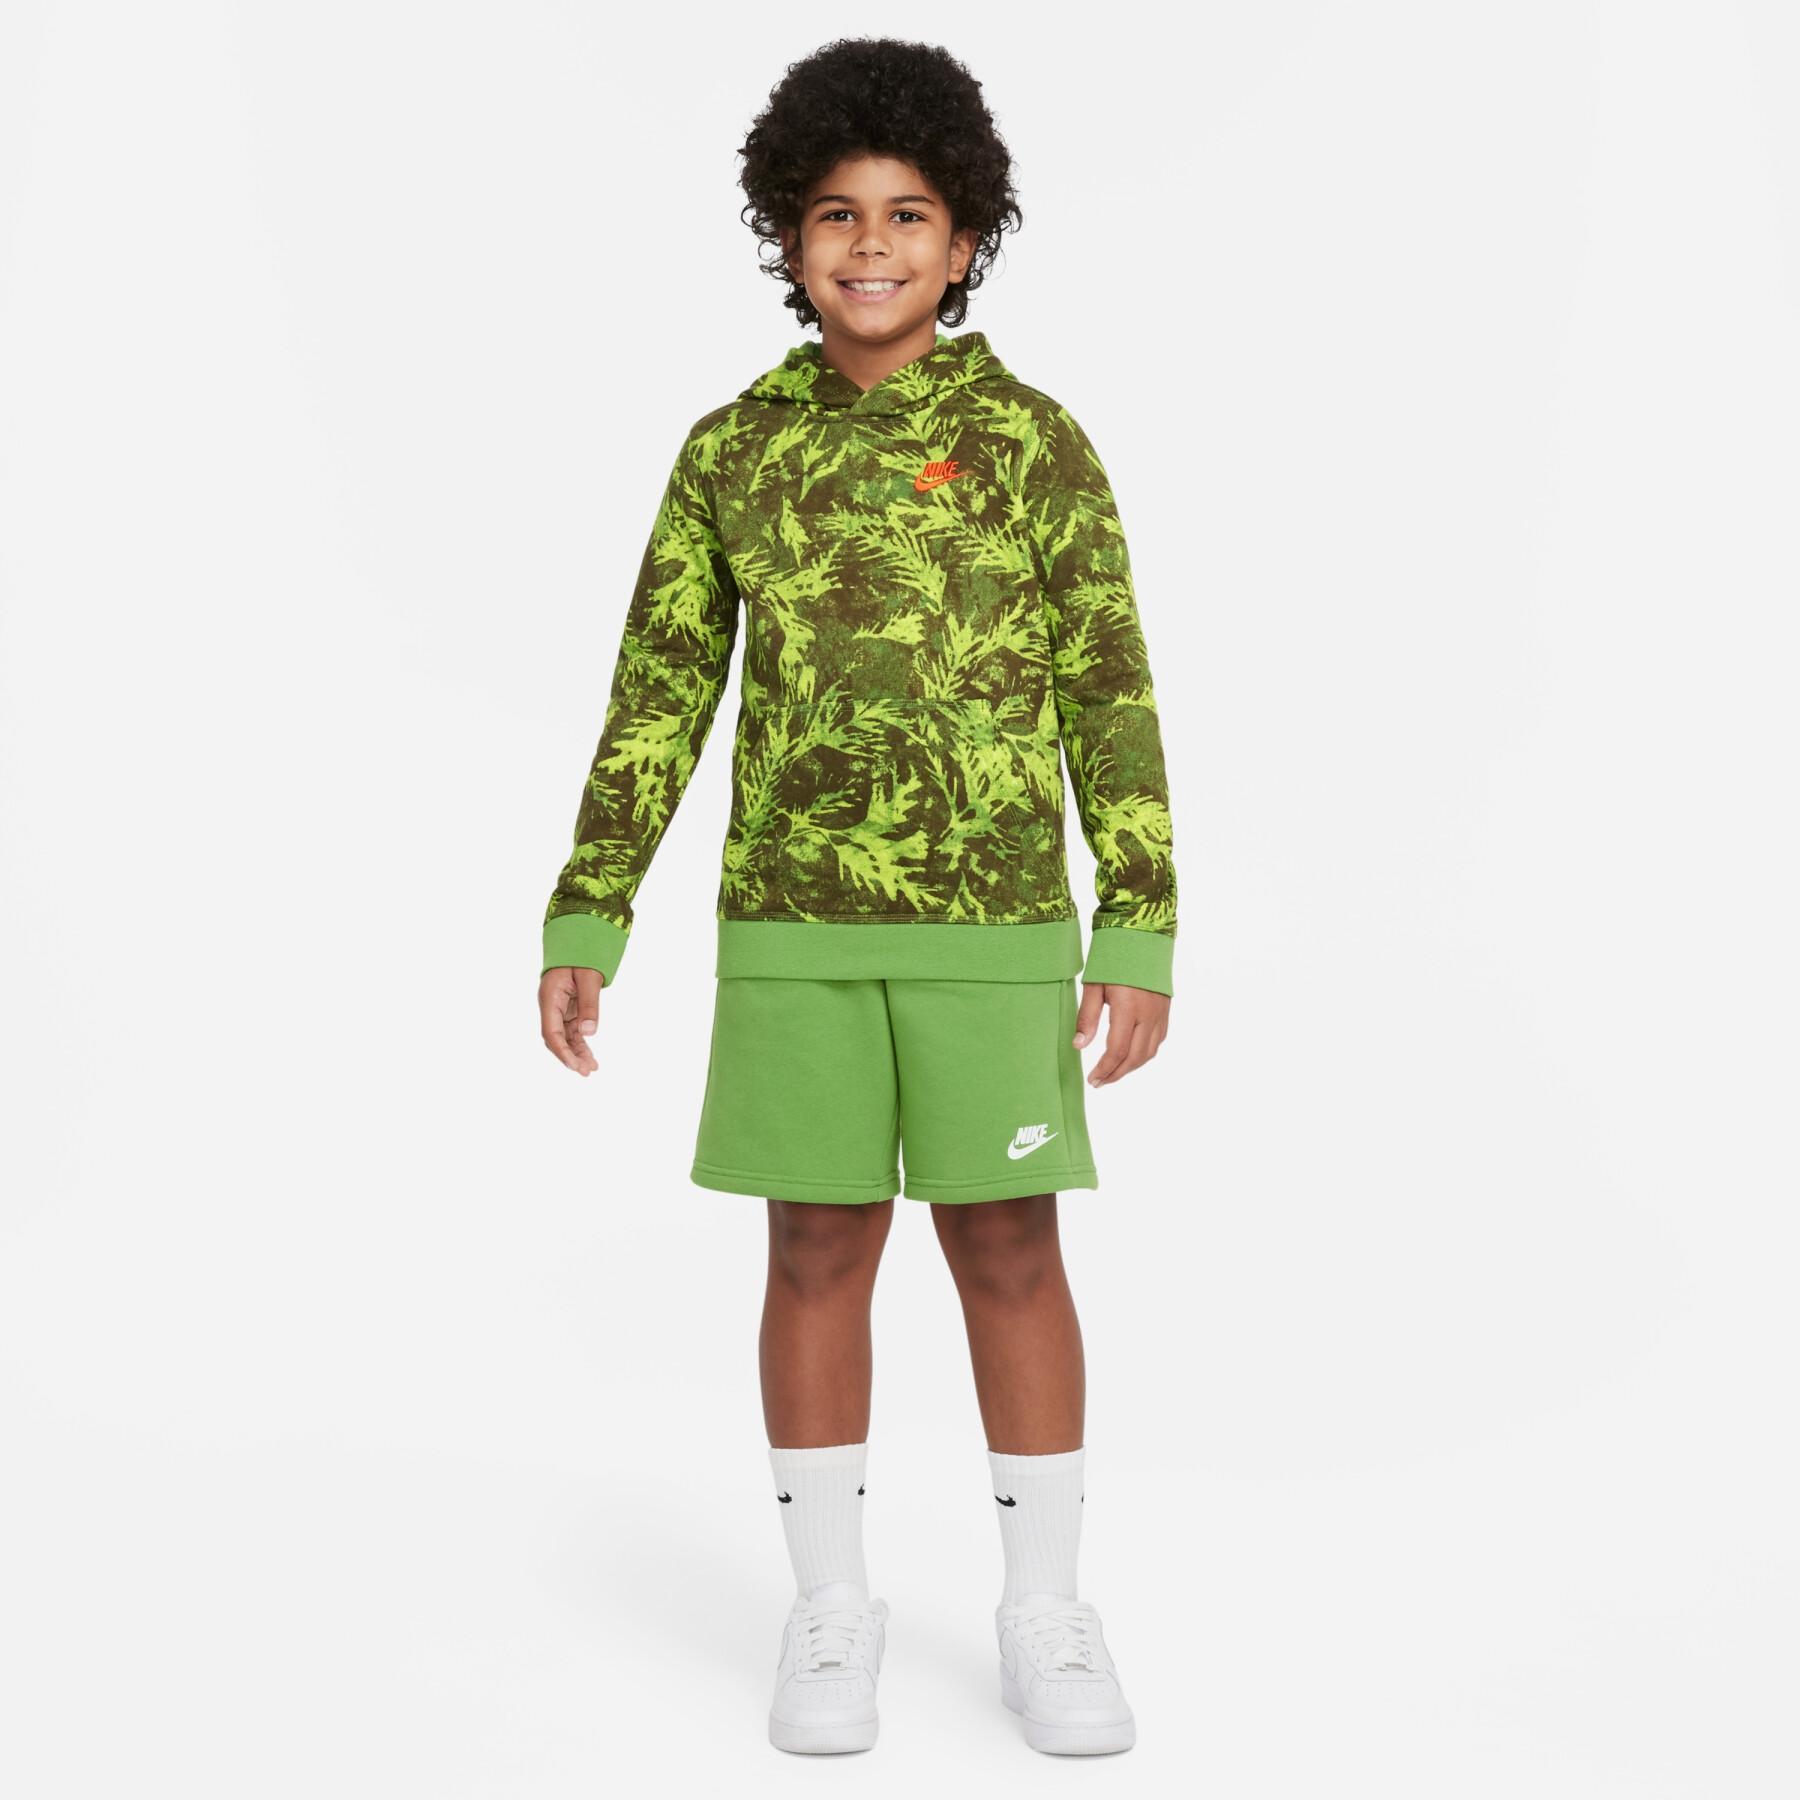 Camisola para crianças Nike Aop